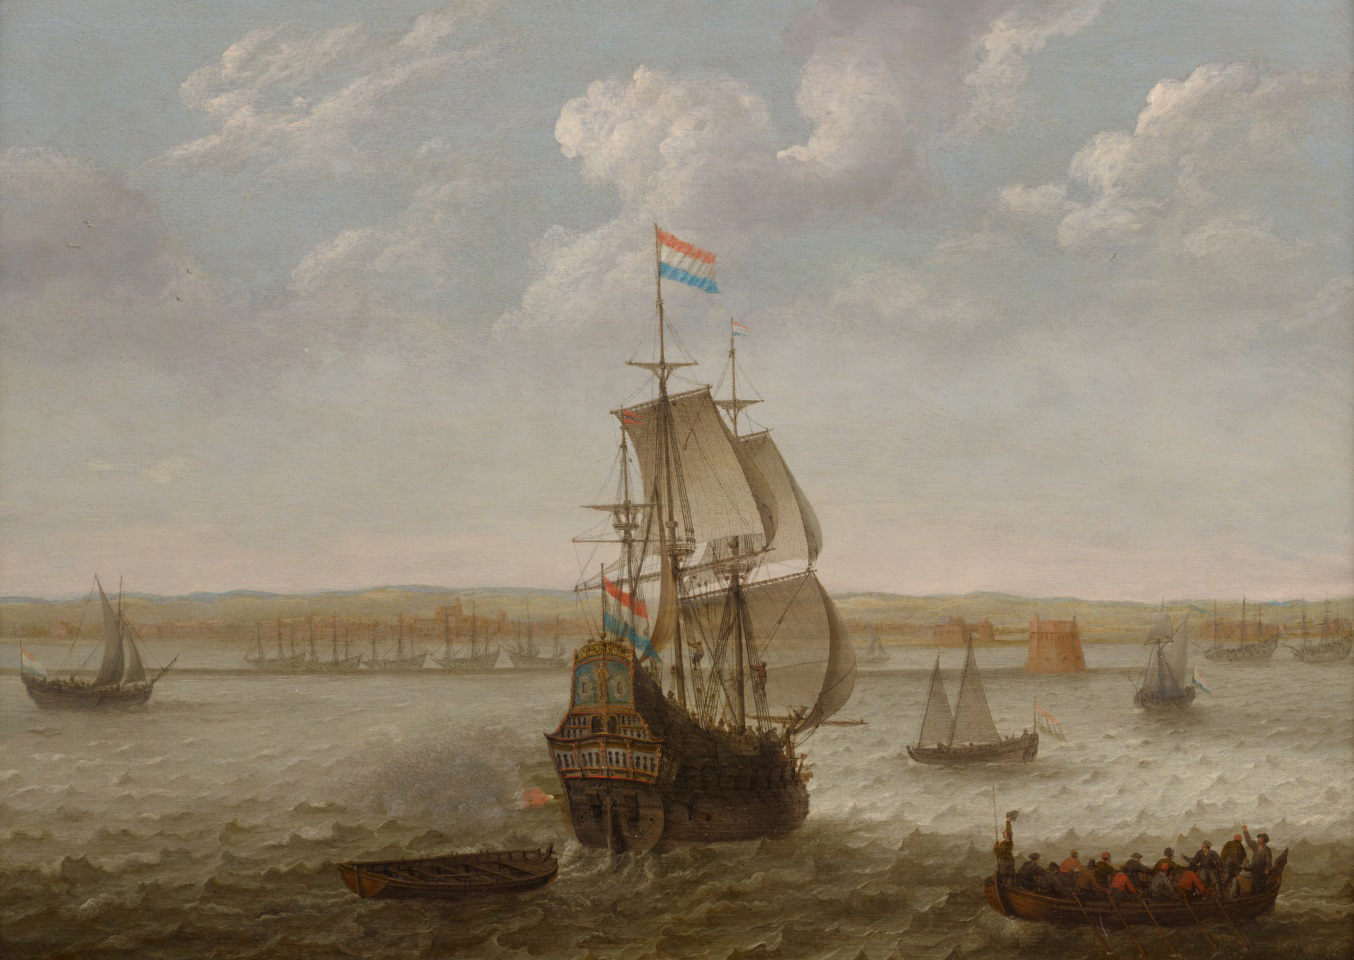 Holandeses no Brasil - Invasões holandesas em Salvador e Pernambuco (Imagem: Pintura 'Navios holandeses na enseada de Recife, Brasil', de Abraham Willaerts - 1640)